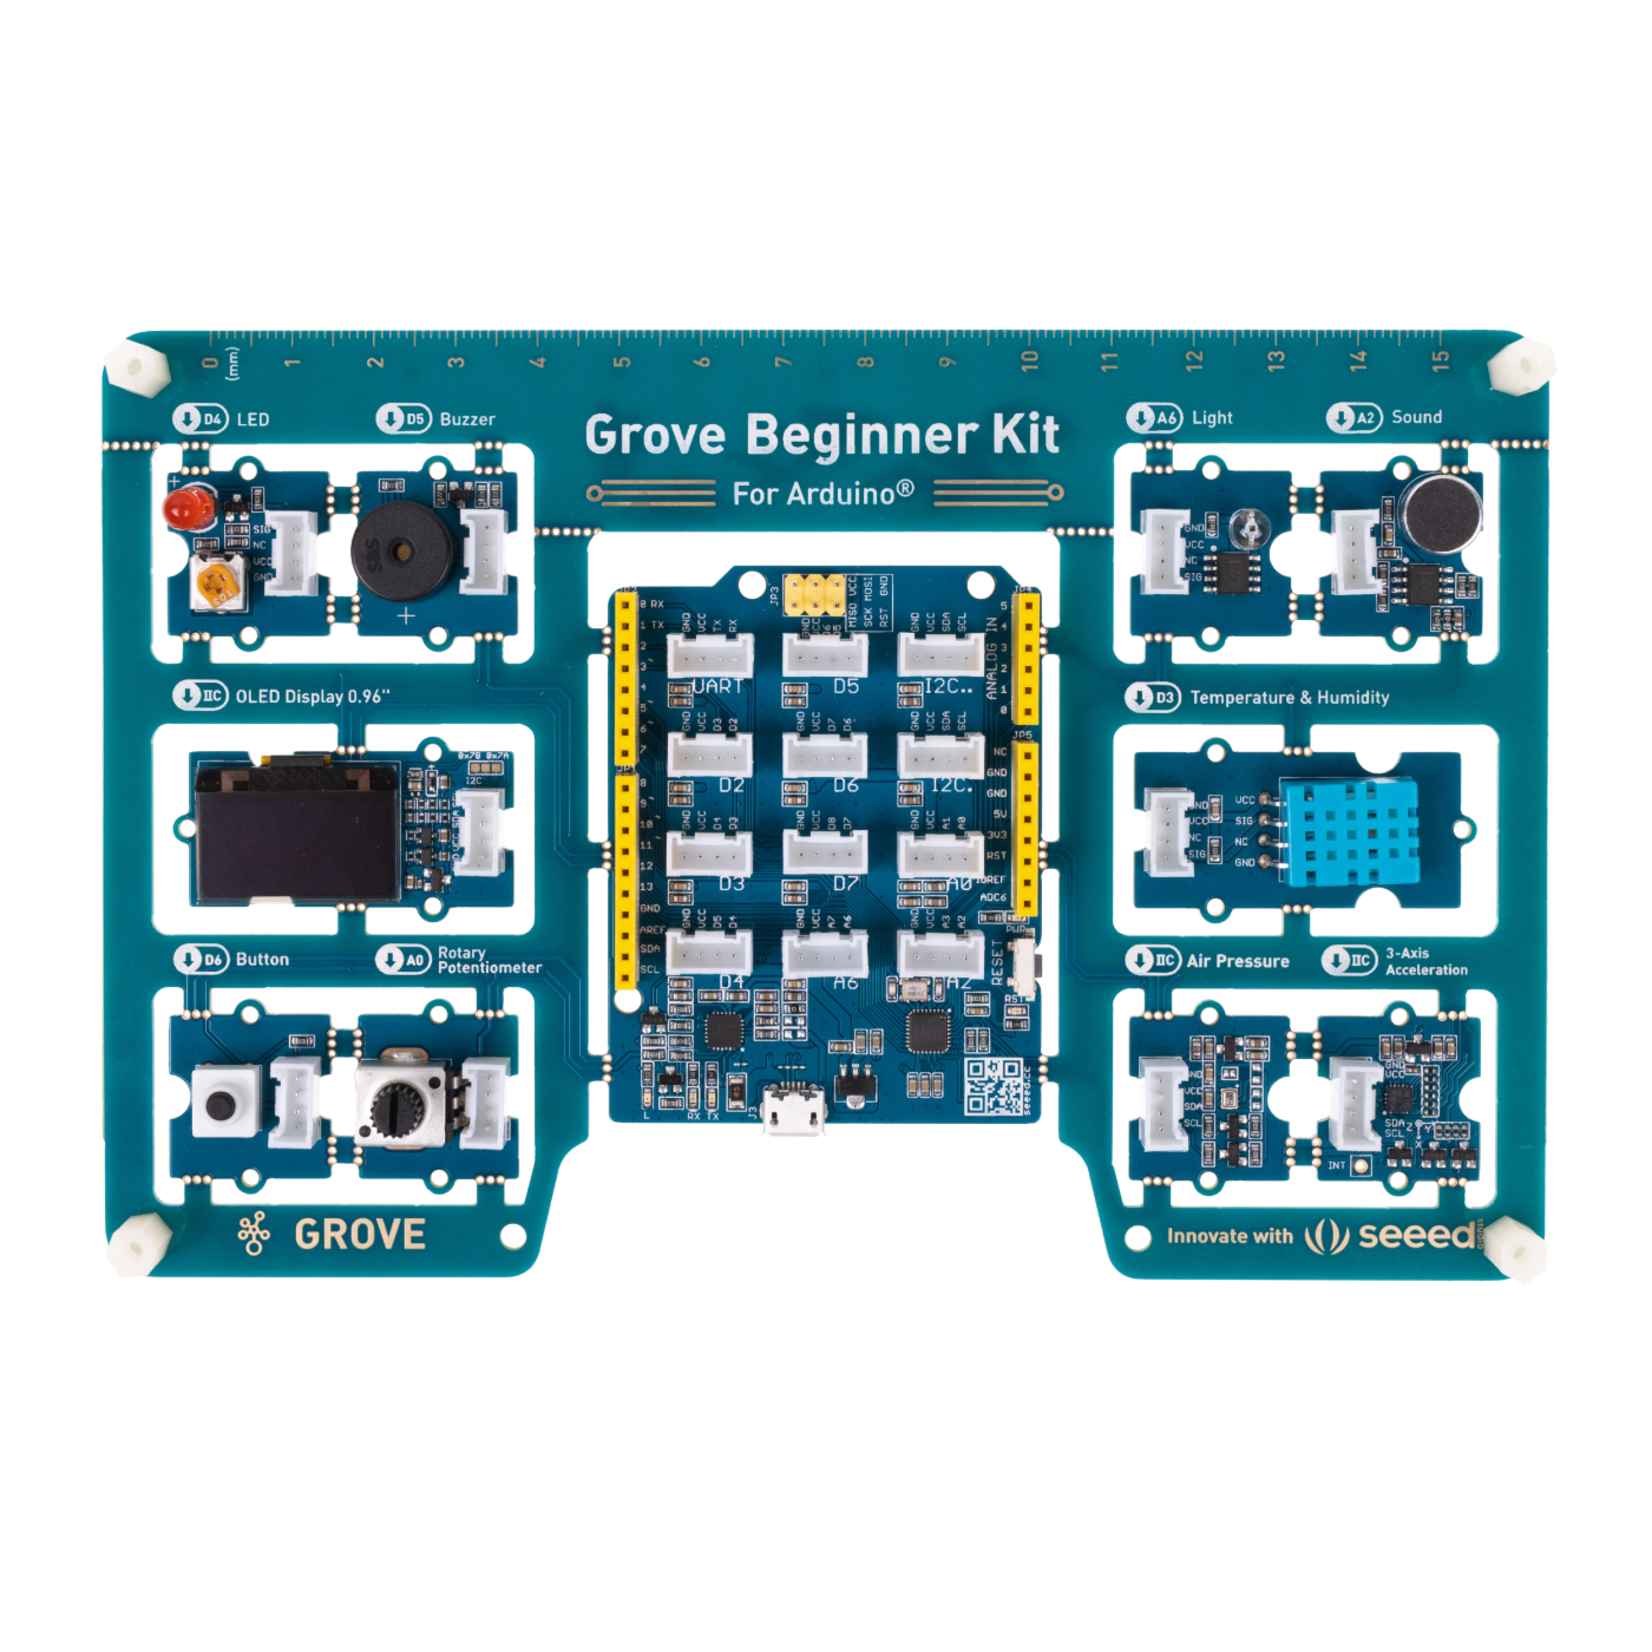 Seeed Grove Beginner Kit for Arduino